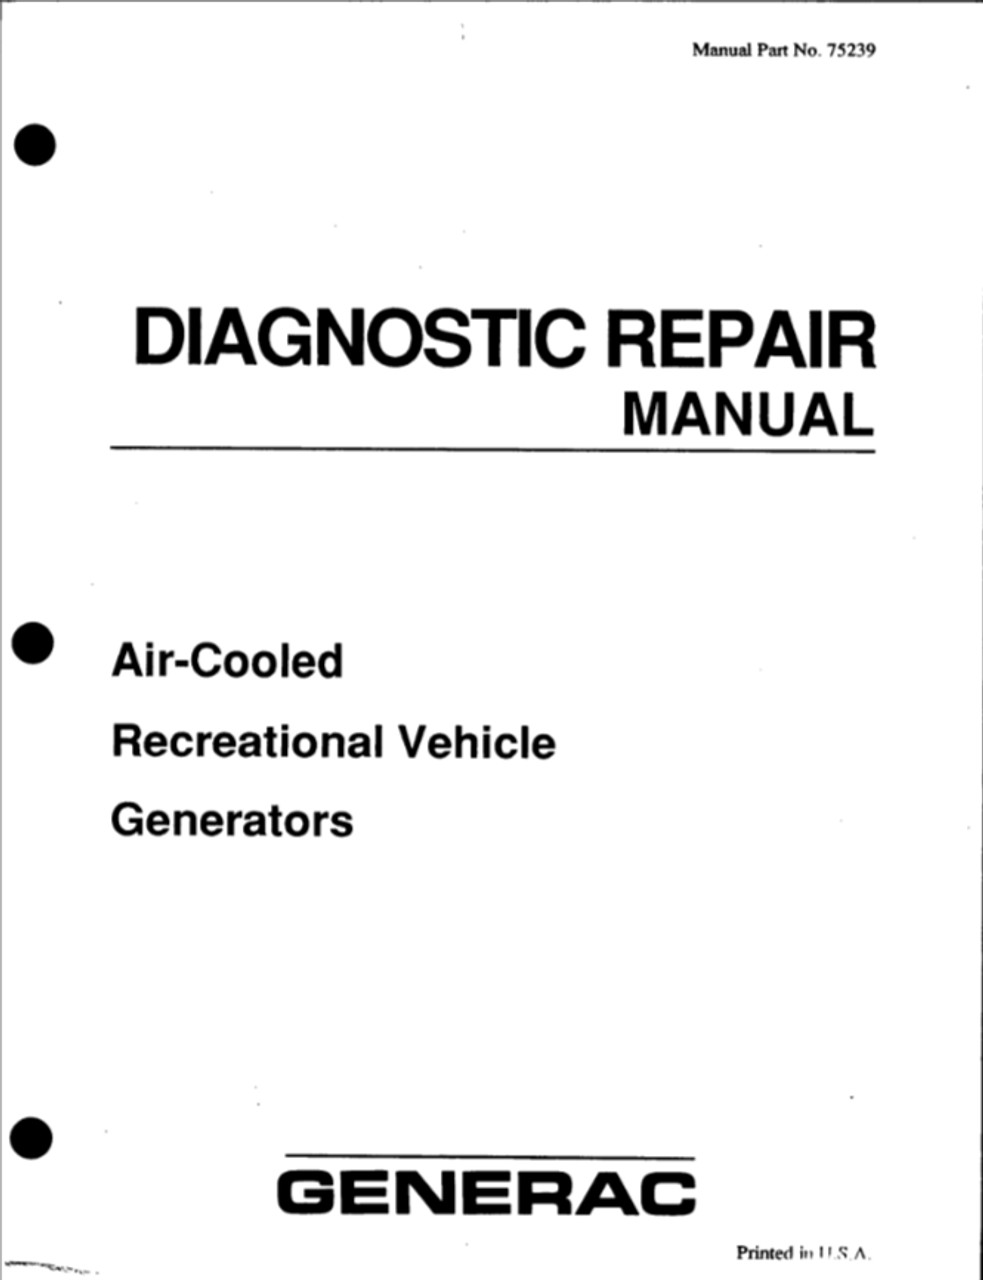 Generac 075239 Diagnostic Repair Manual